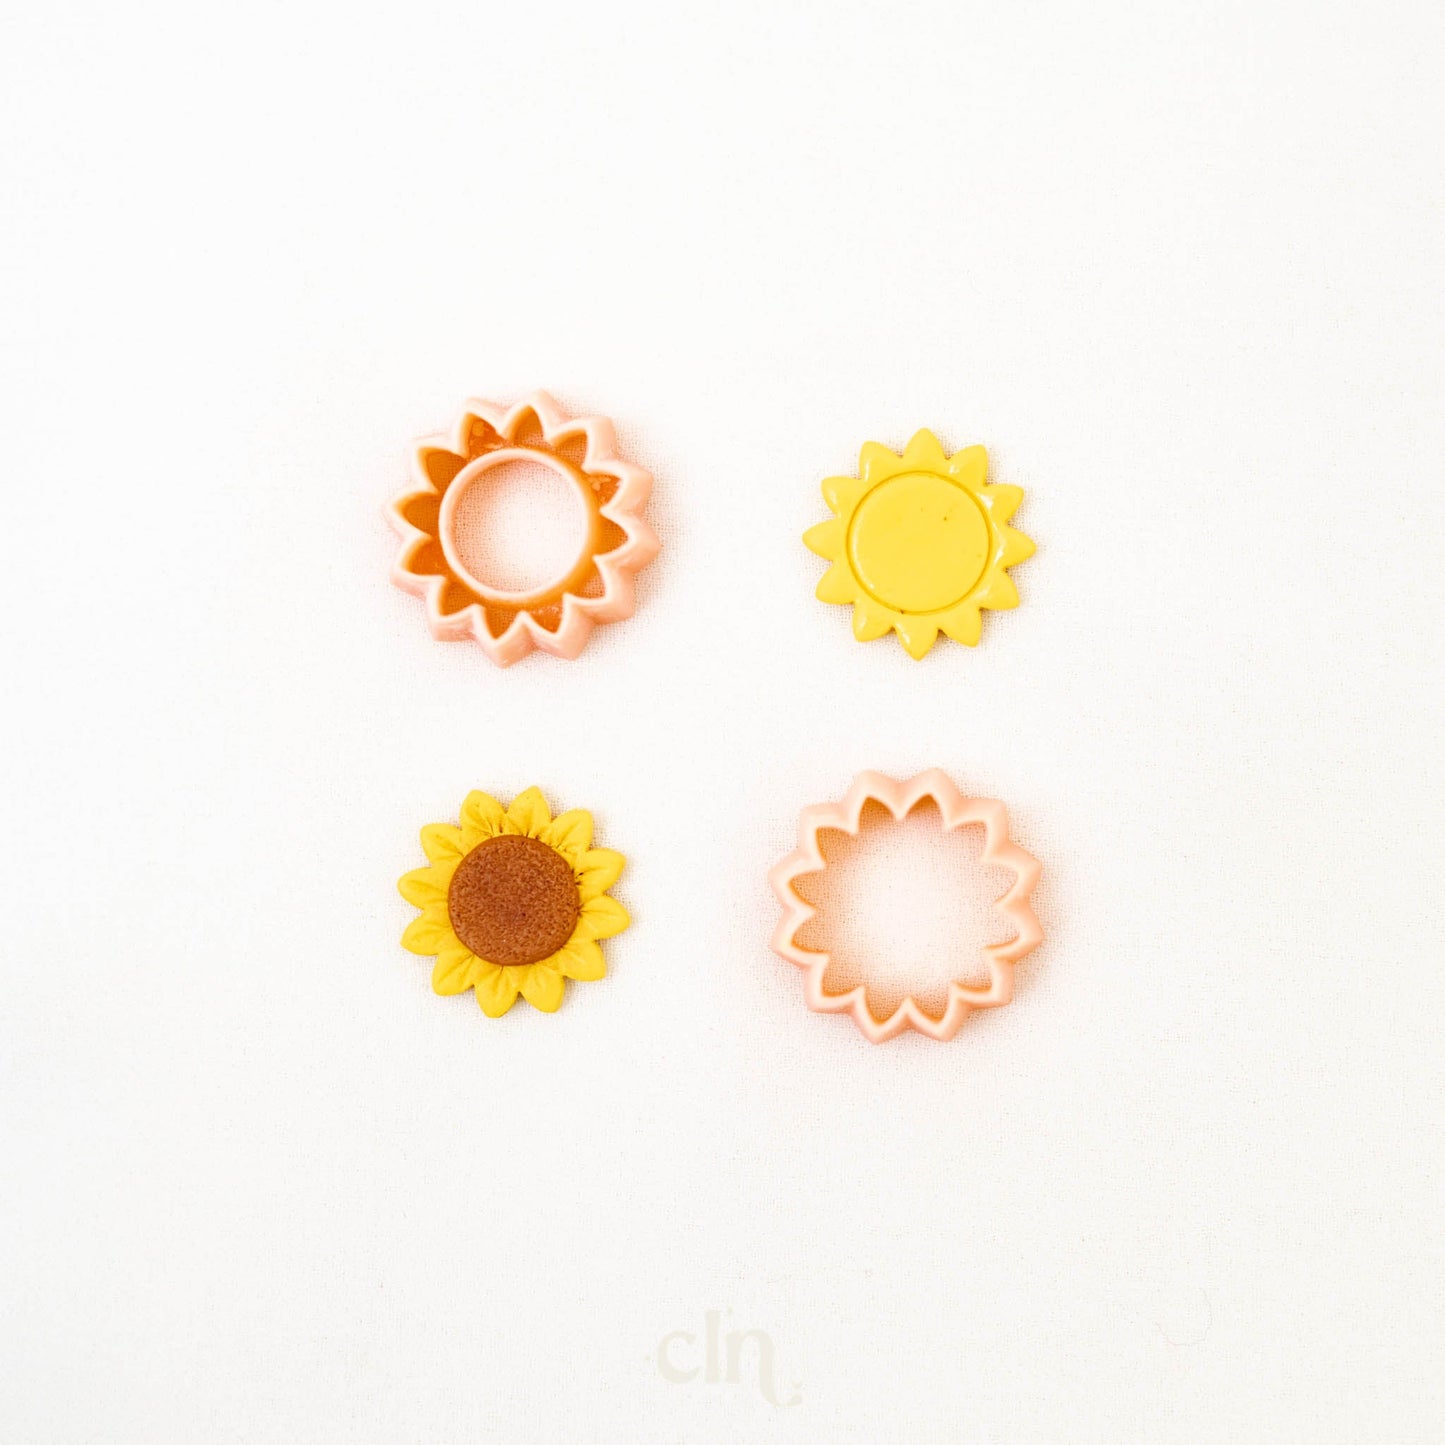 Sun(flower) - Cutter - CLN Atelier